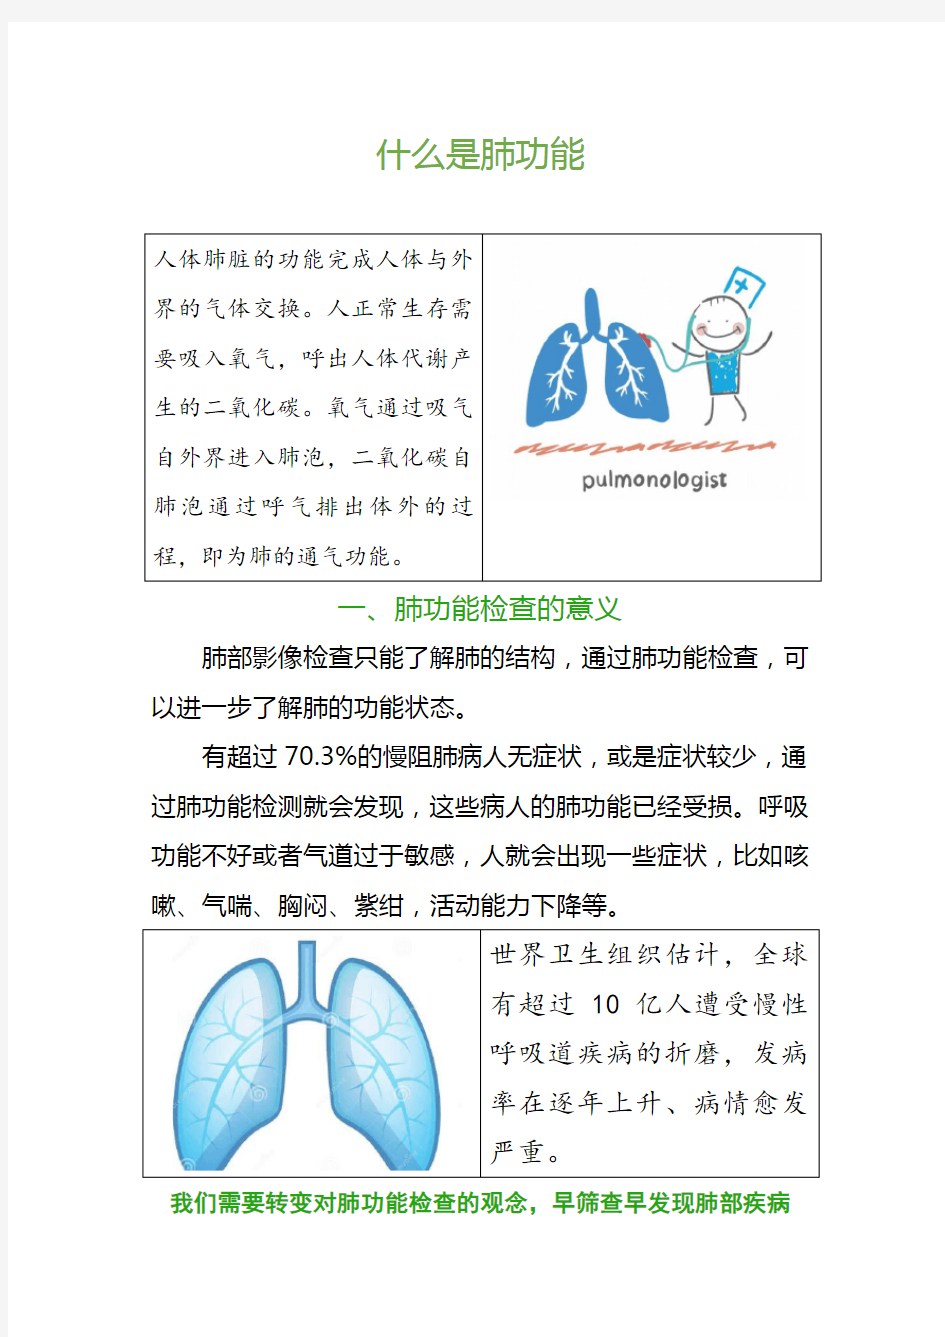 什么是肺功能检查